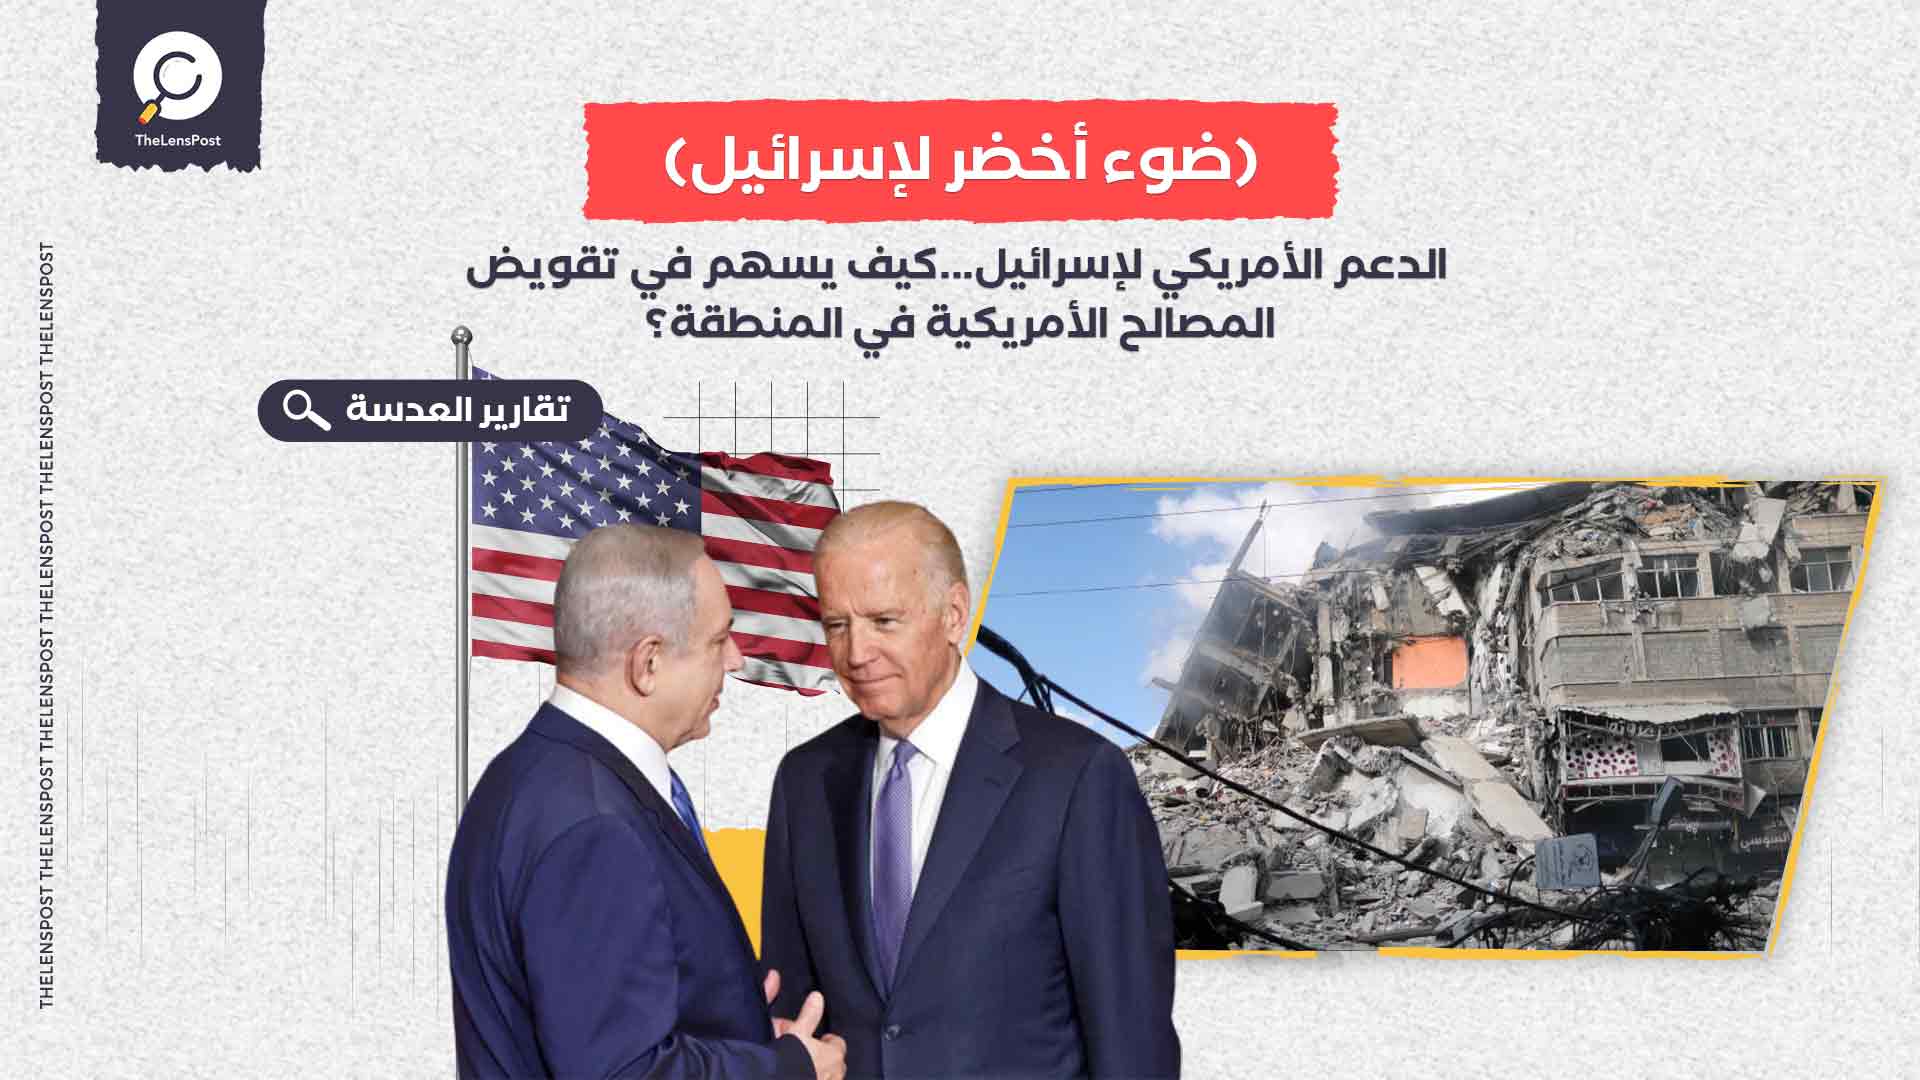  الدعم الأمريكي لإسرائيل...كيف يسهم في تقويض المصالح الأمريكية في المنطقة؟